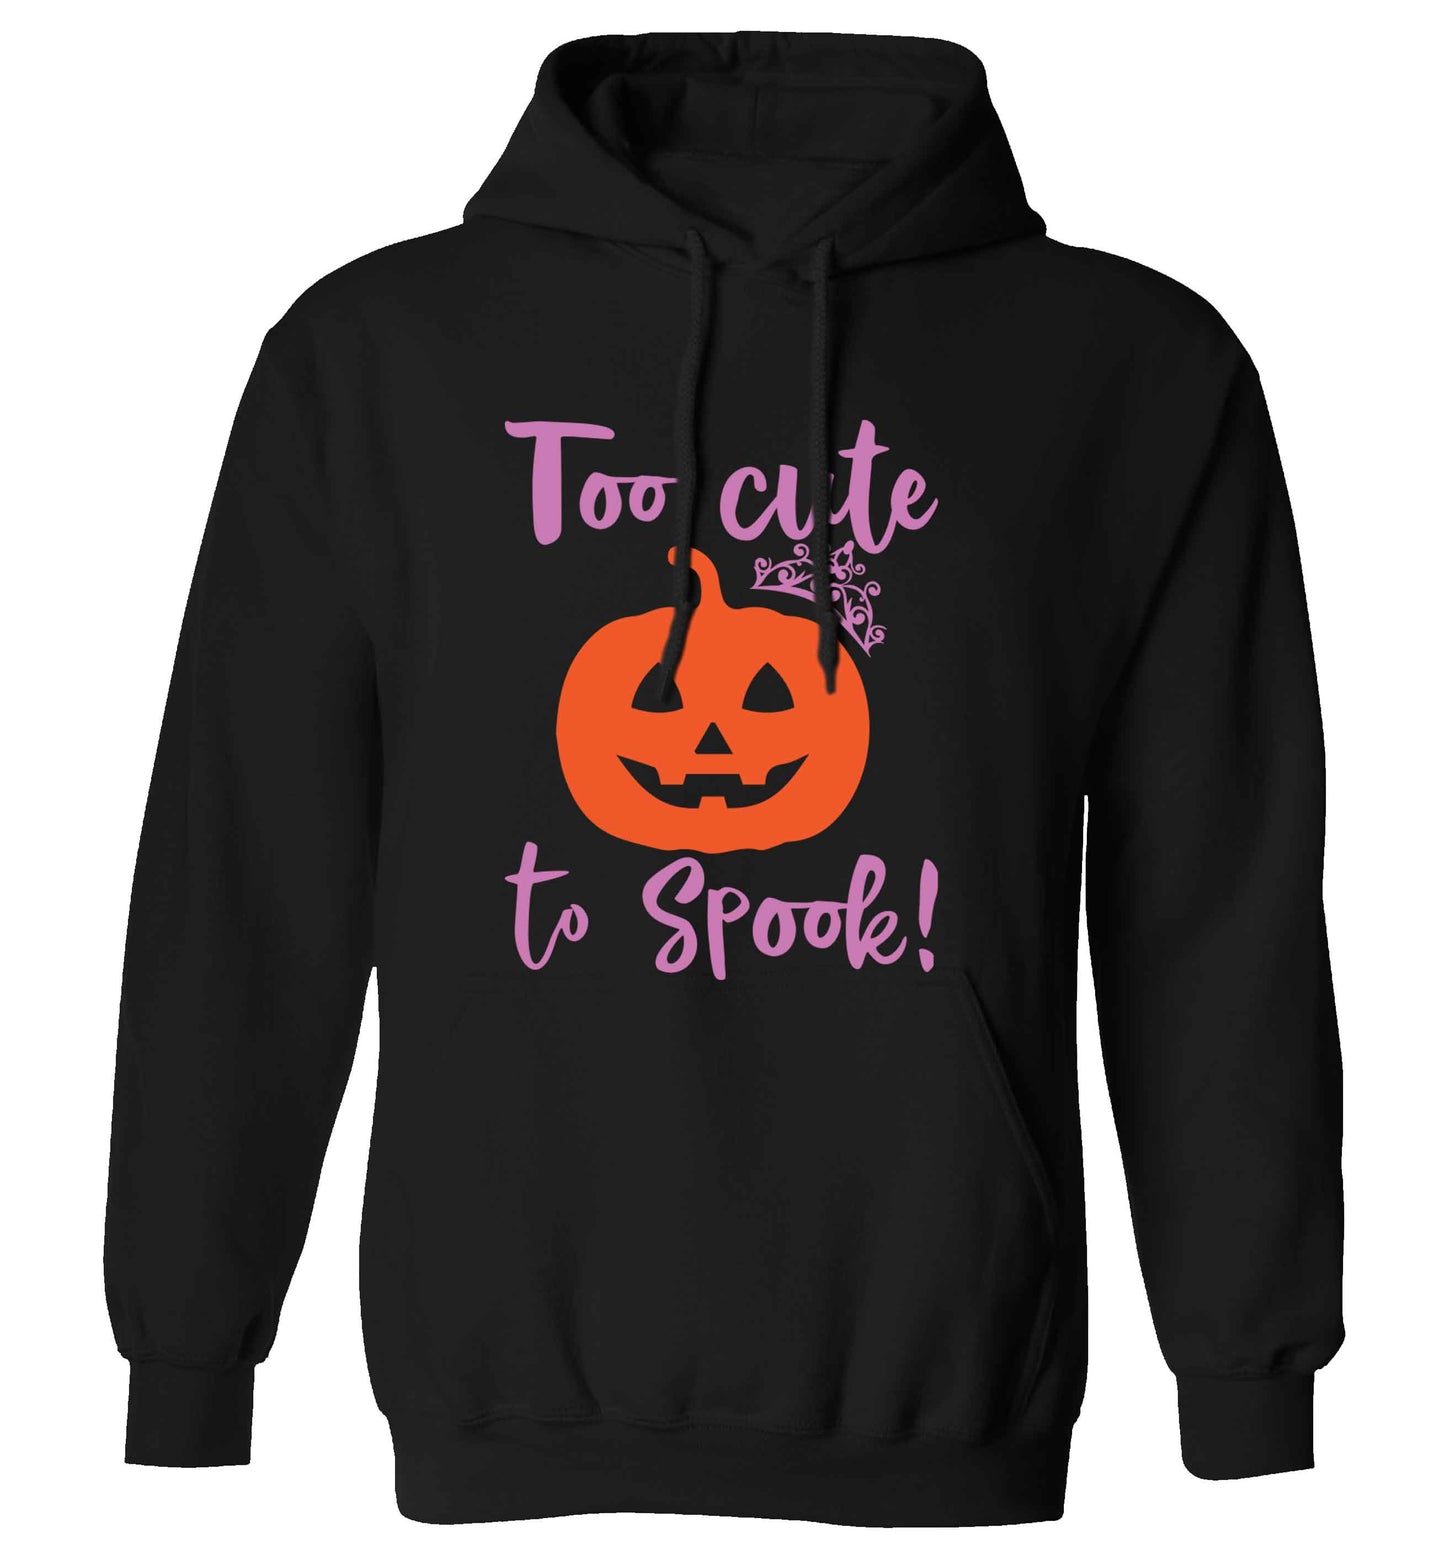 Too cute to spook! adults unisex black hoodie 2XL